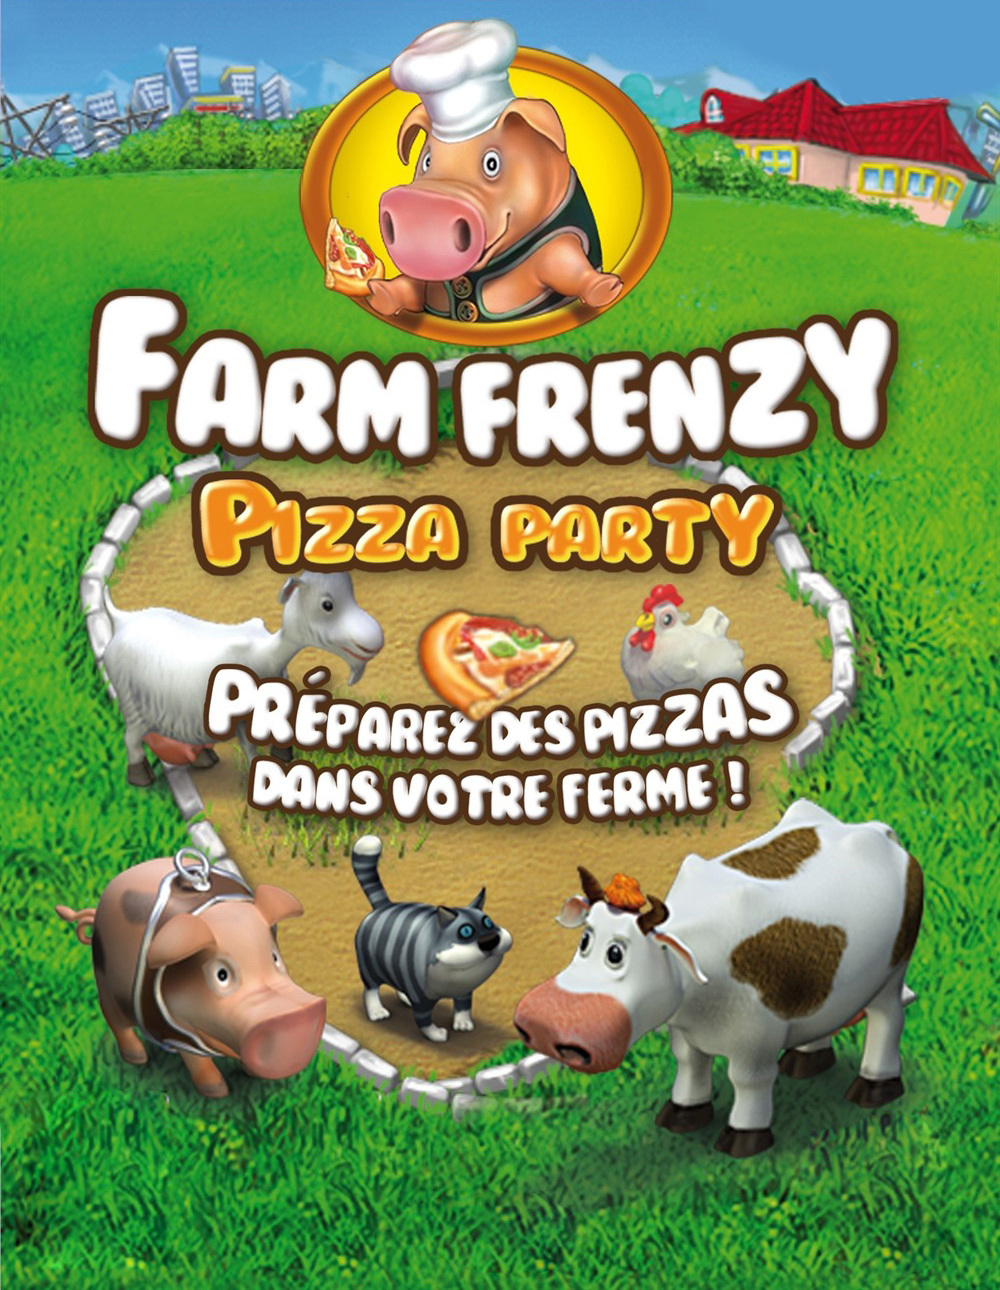 веселая ферма печем пиццу играть онлайн бесплатно полная версия фото 73